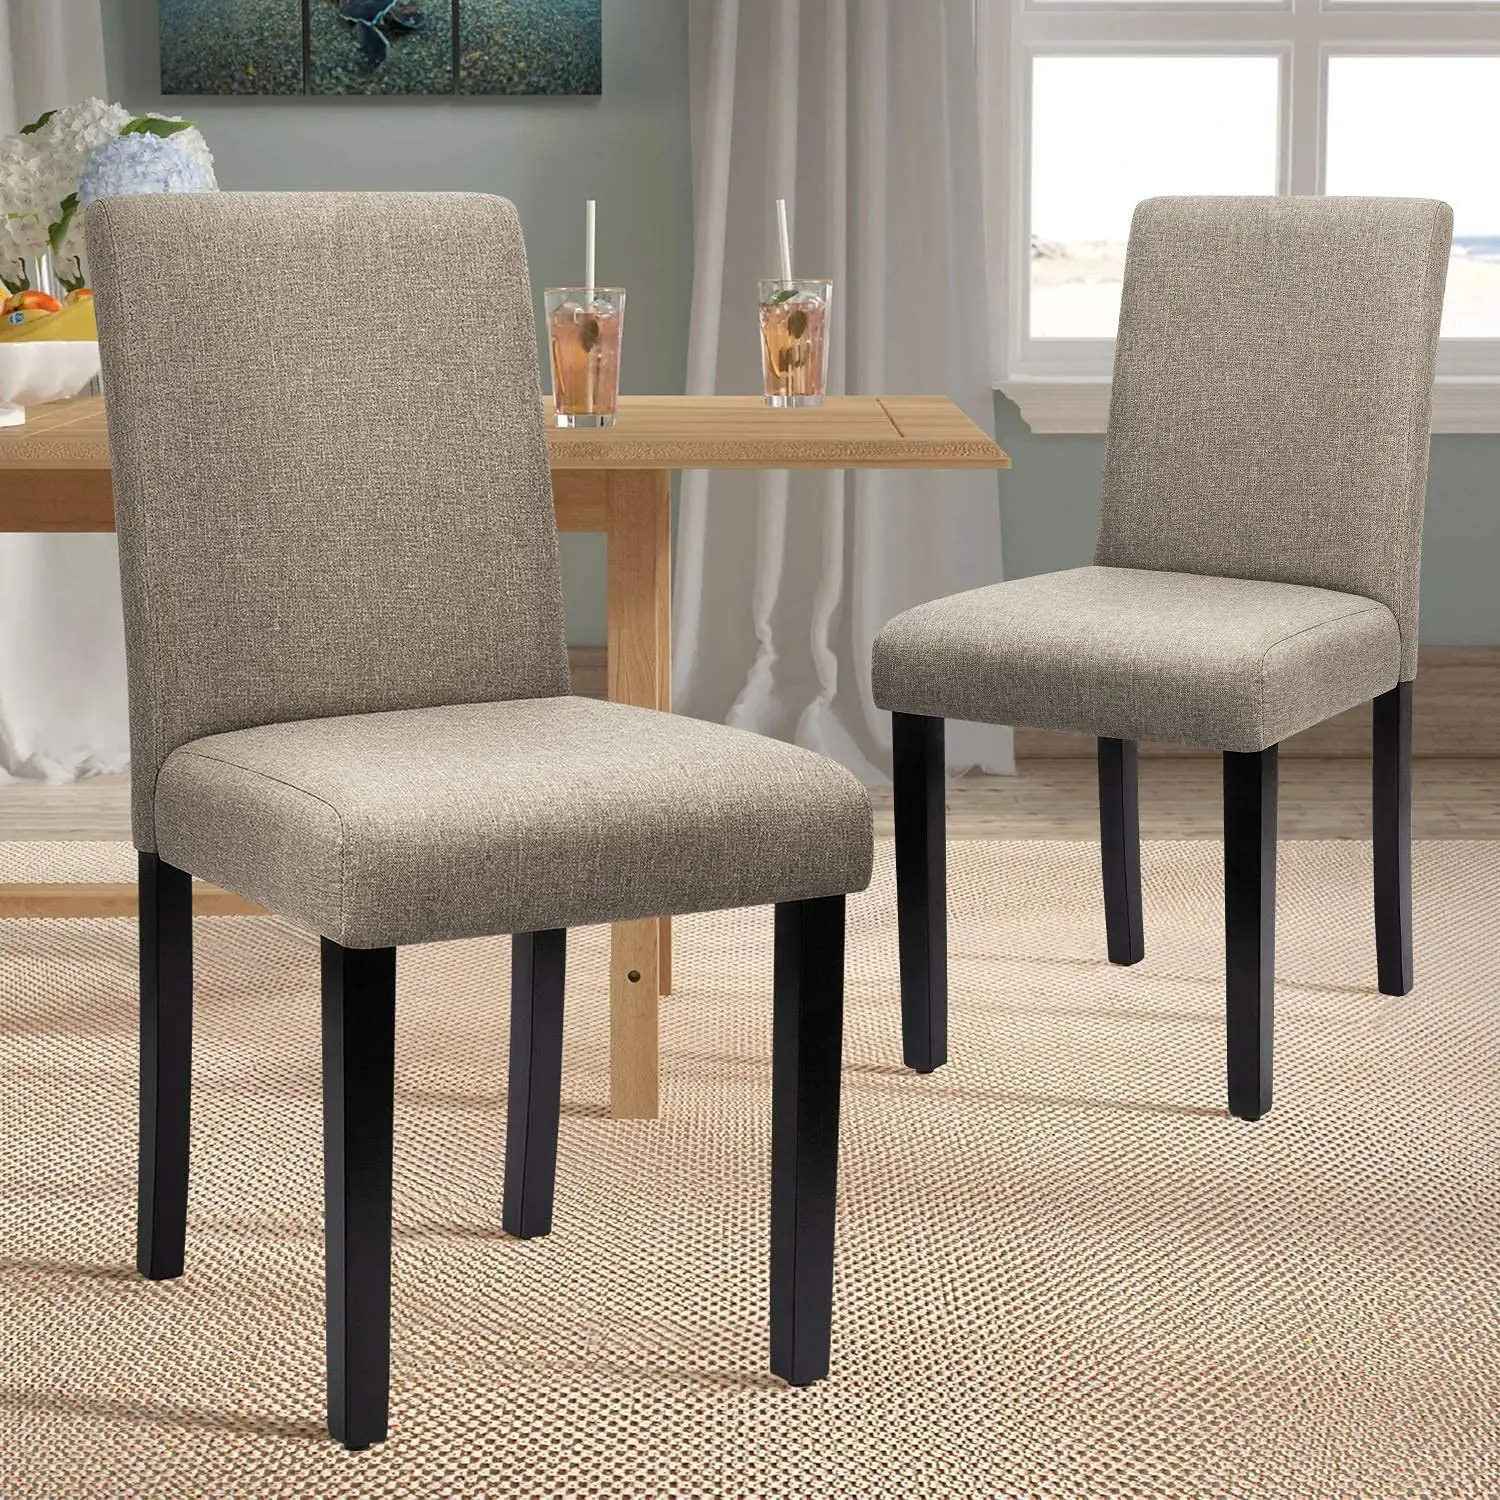 Modern european minimalist wood highend hotel restaurant chairs furniture